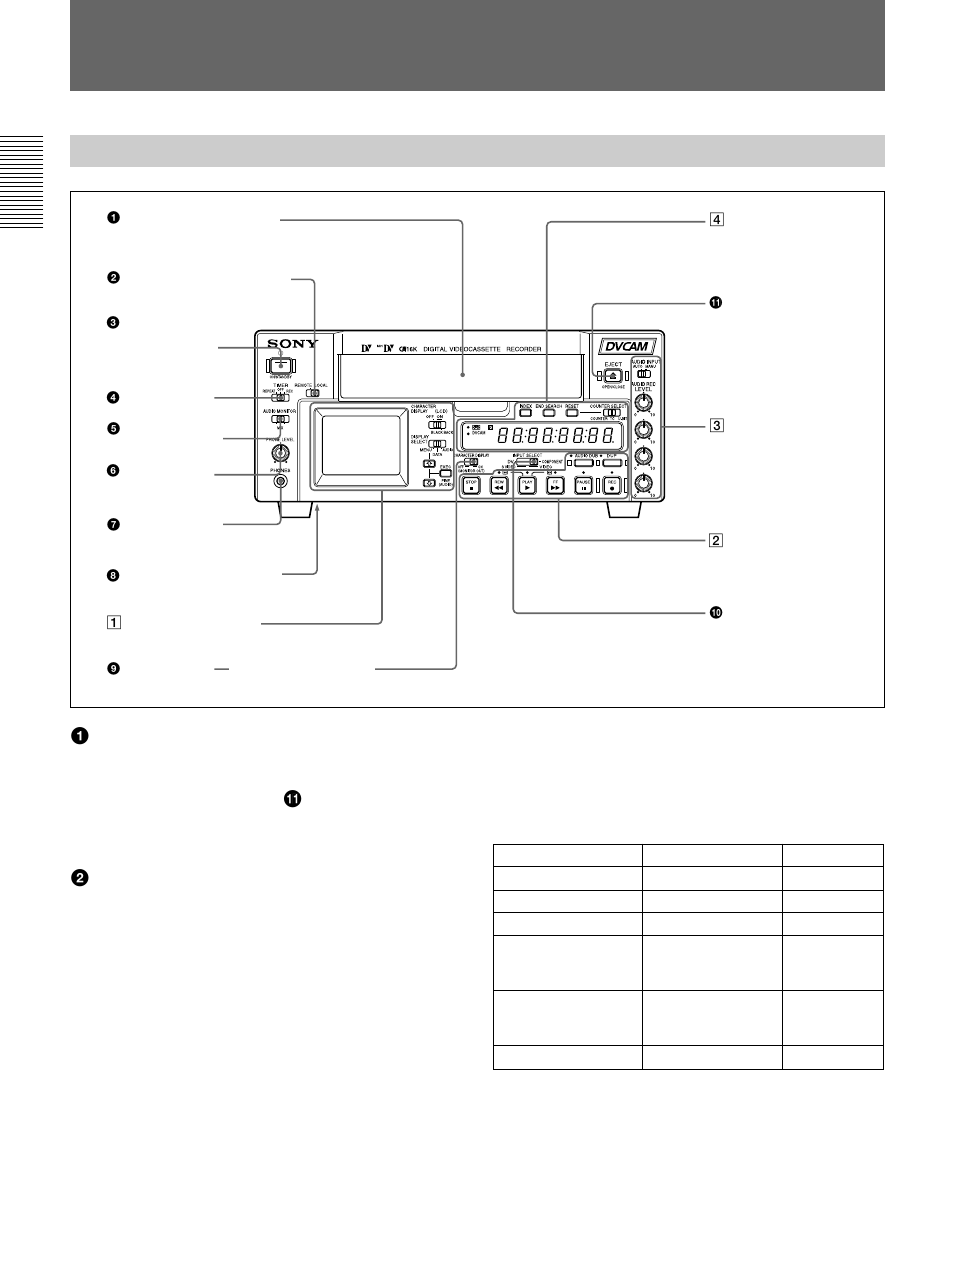 Emplacement et fonction des pi è ces, Panneau avant, Emplacement et fonction des pièces | Sony DSR-45/45P Manuel d'utilisation | Page 118 / 220